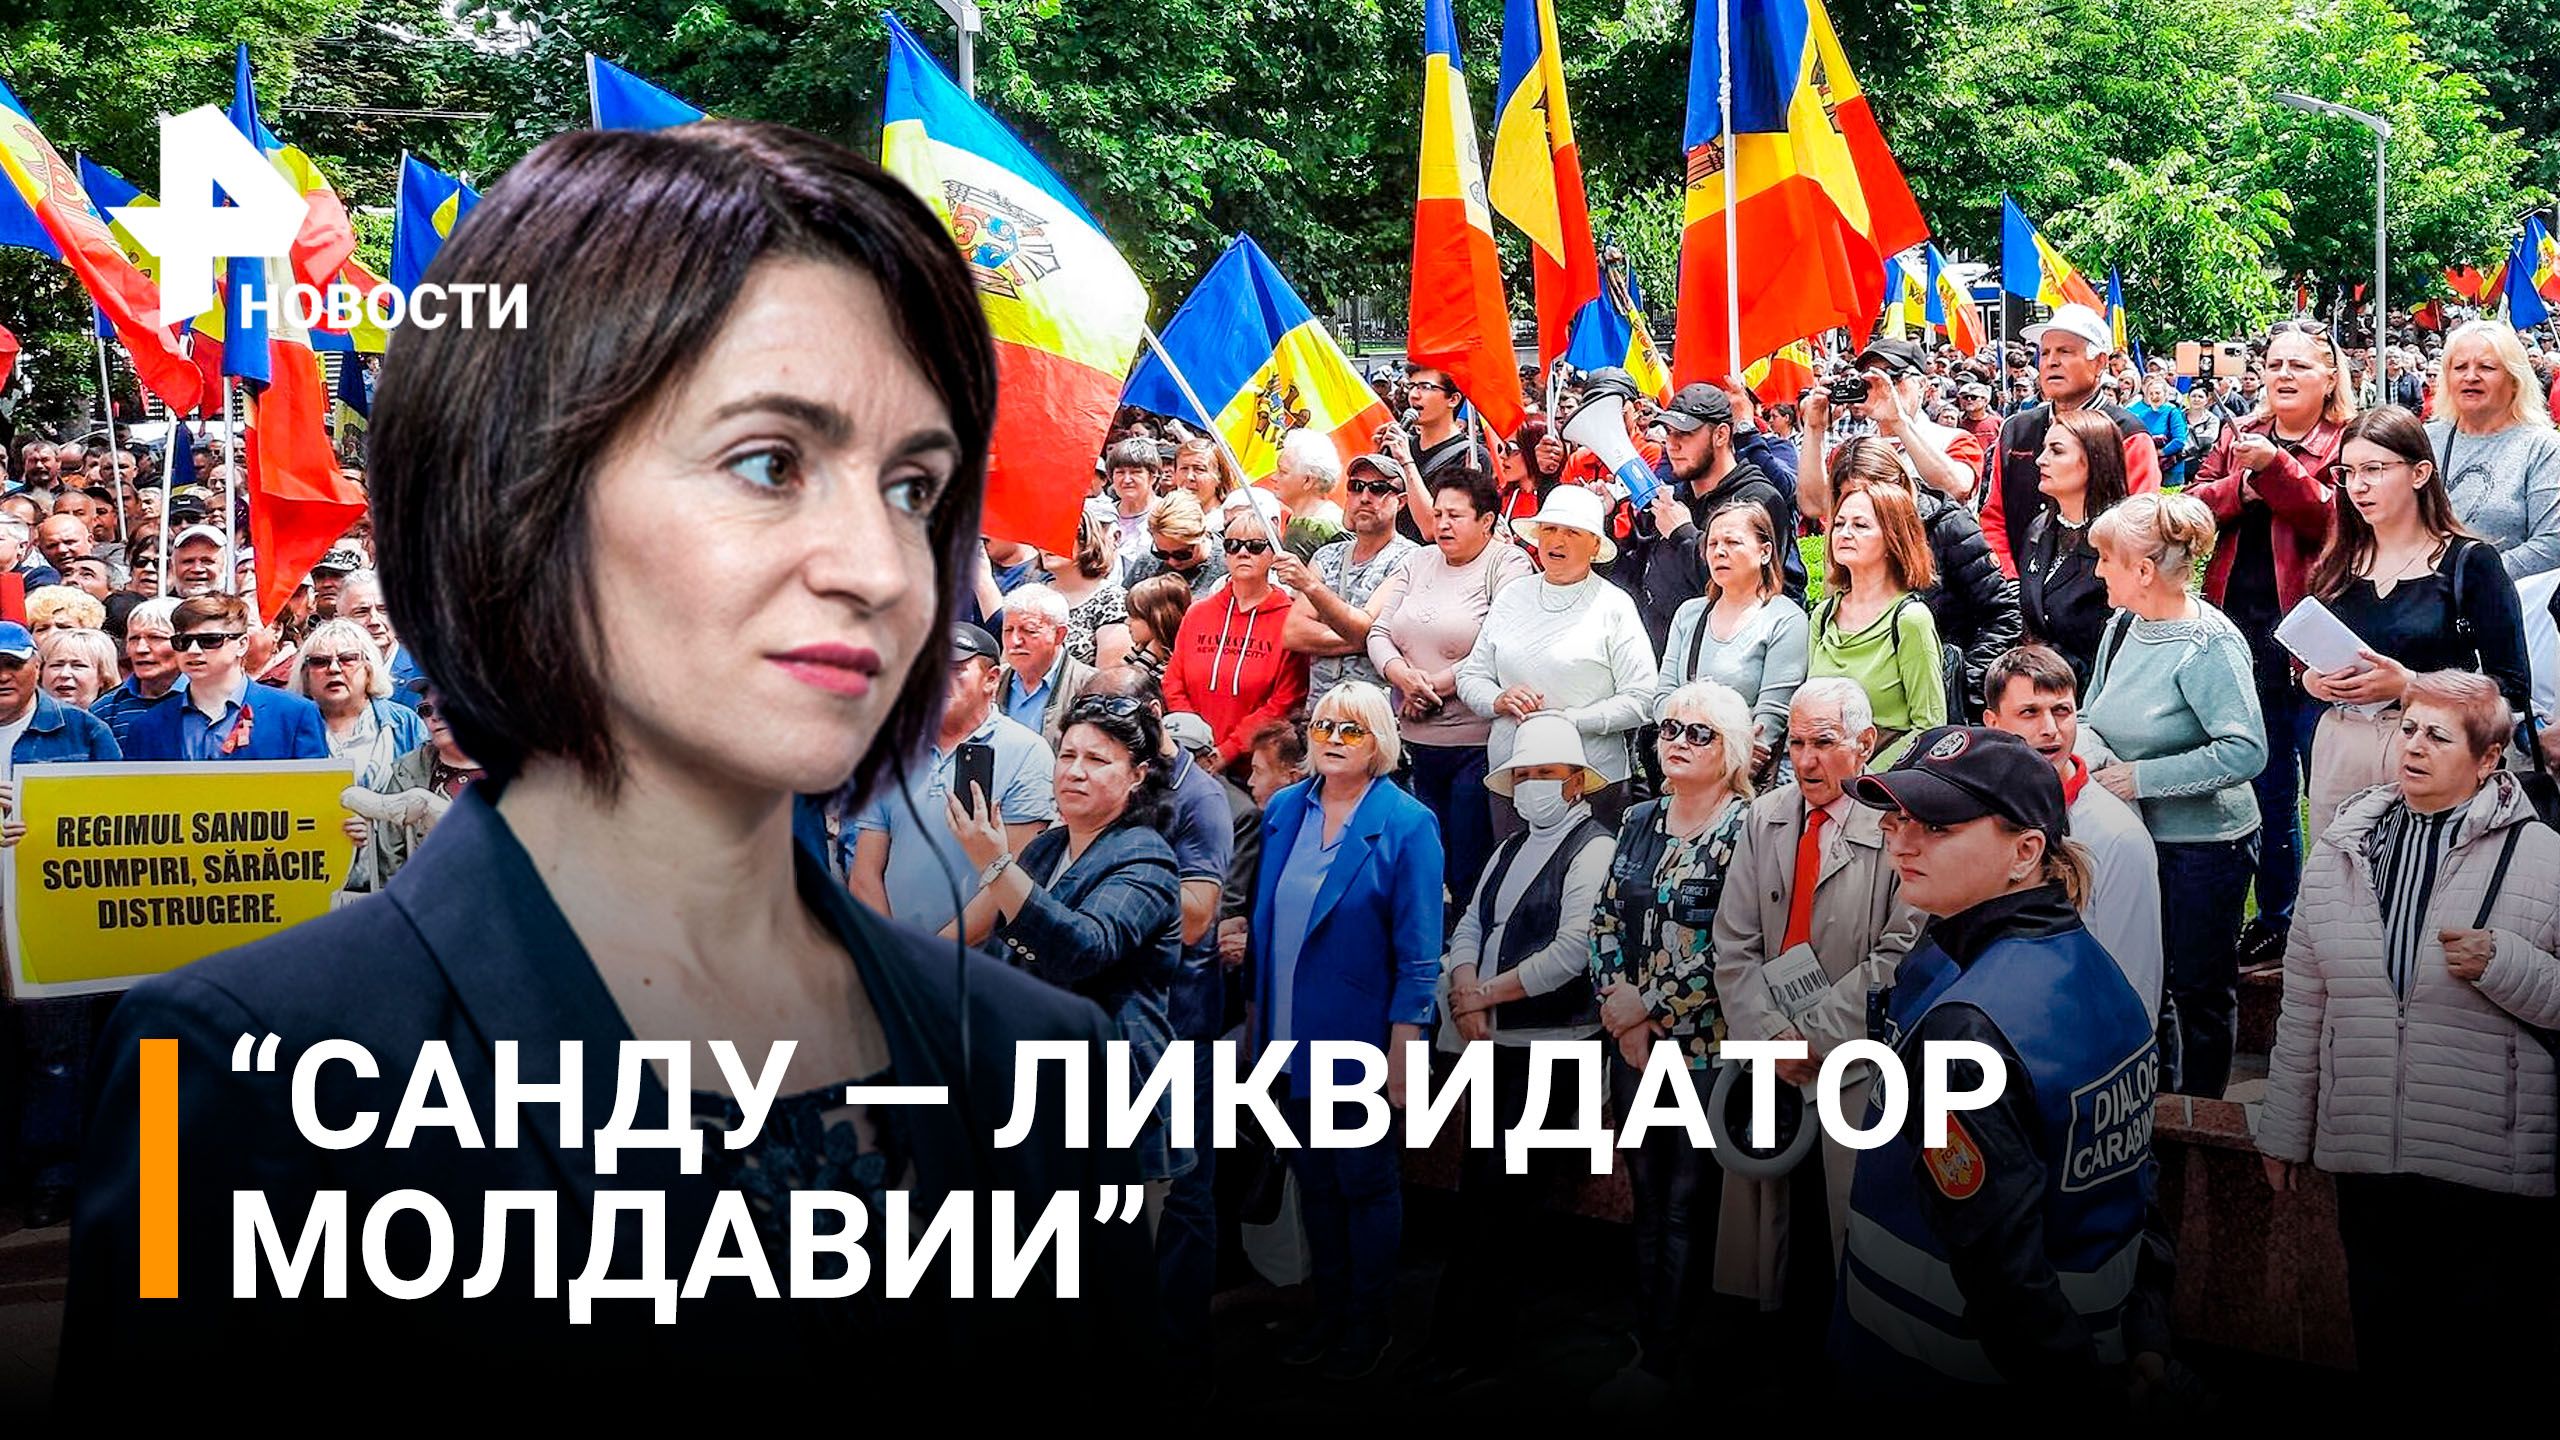 Отставки Санду требует оппозиция Молдавии - протесты в Кишиневе / РЕН Новости